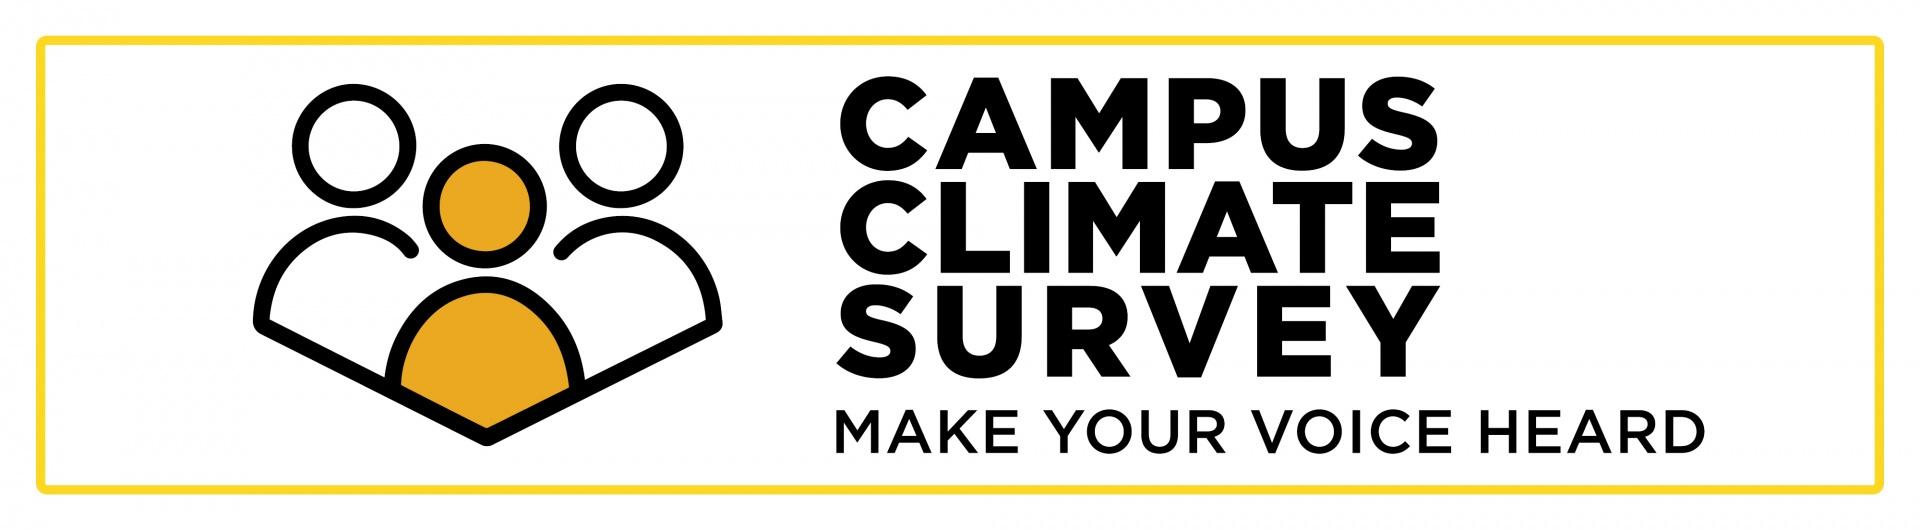 Campus climate survey